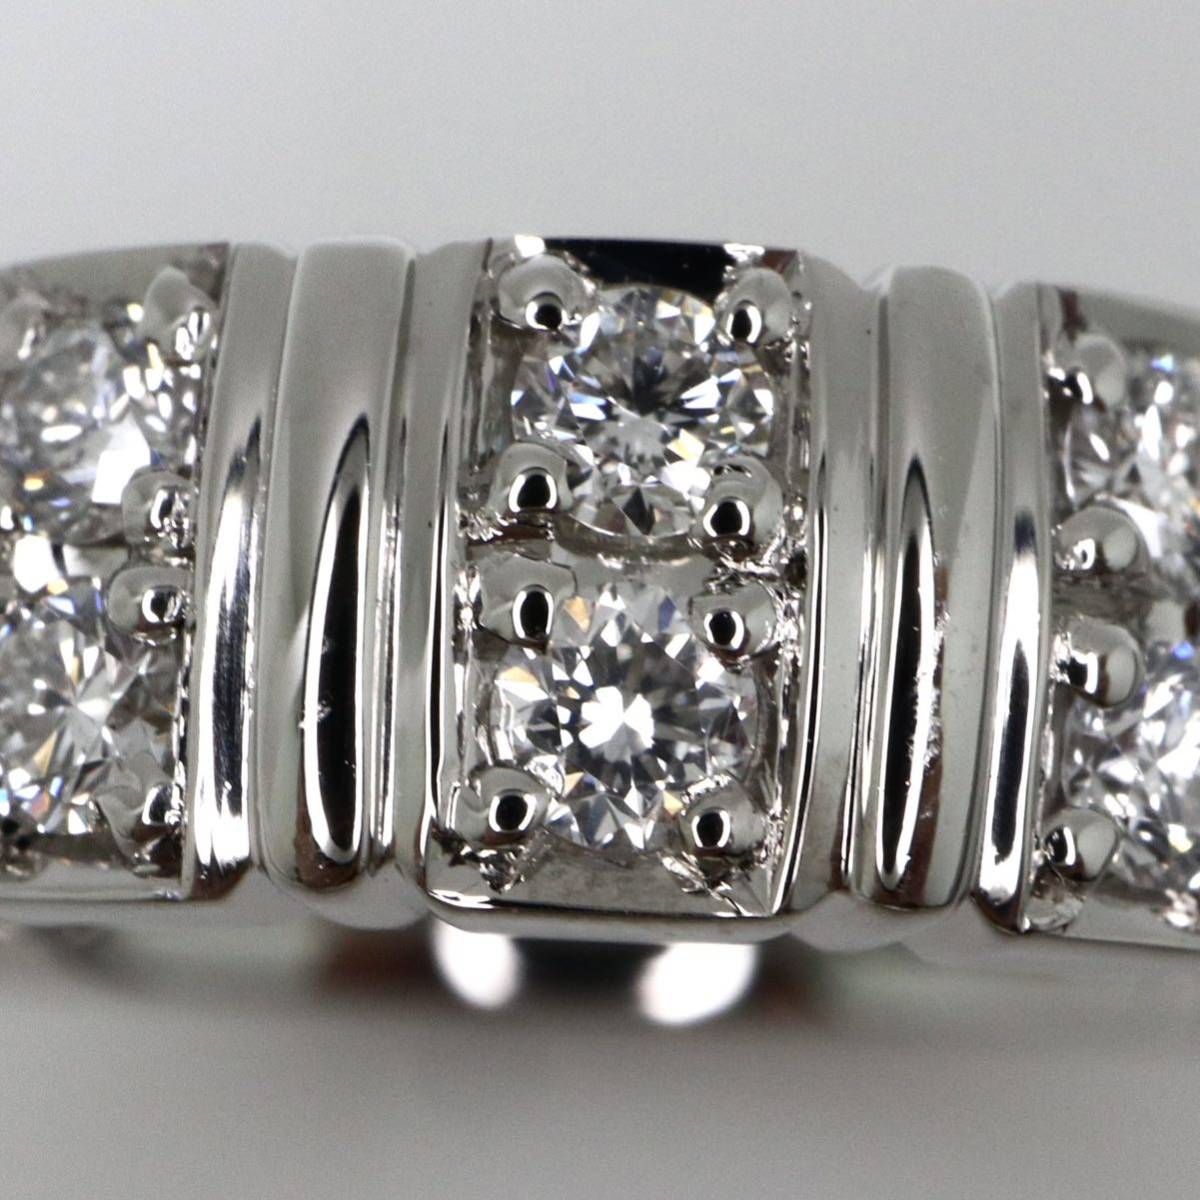 新品仕上げ済み!!Ambrose(アンブローズ)◆Pt900 天然ダイヤモンド リング◆M 7.4g 12号 0.30ct diamond ring 指輪 jewelry EC6_画像4